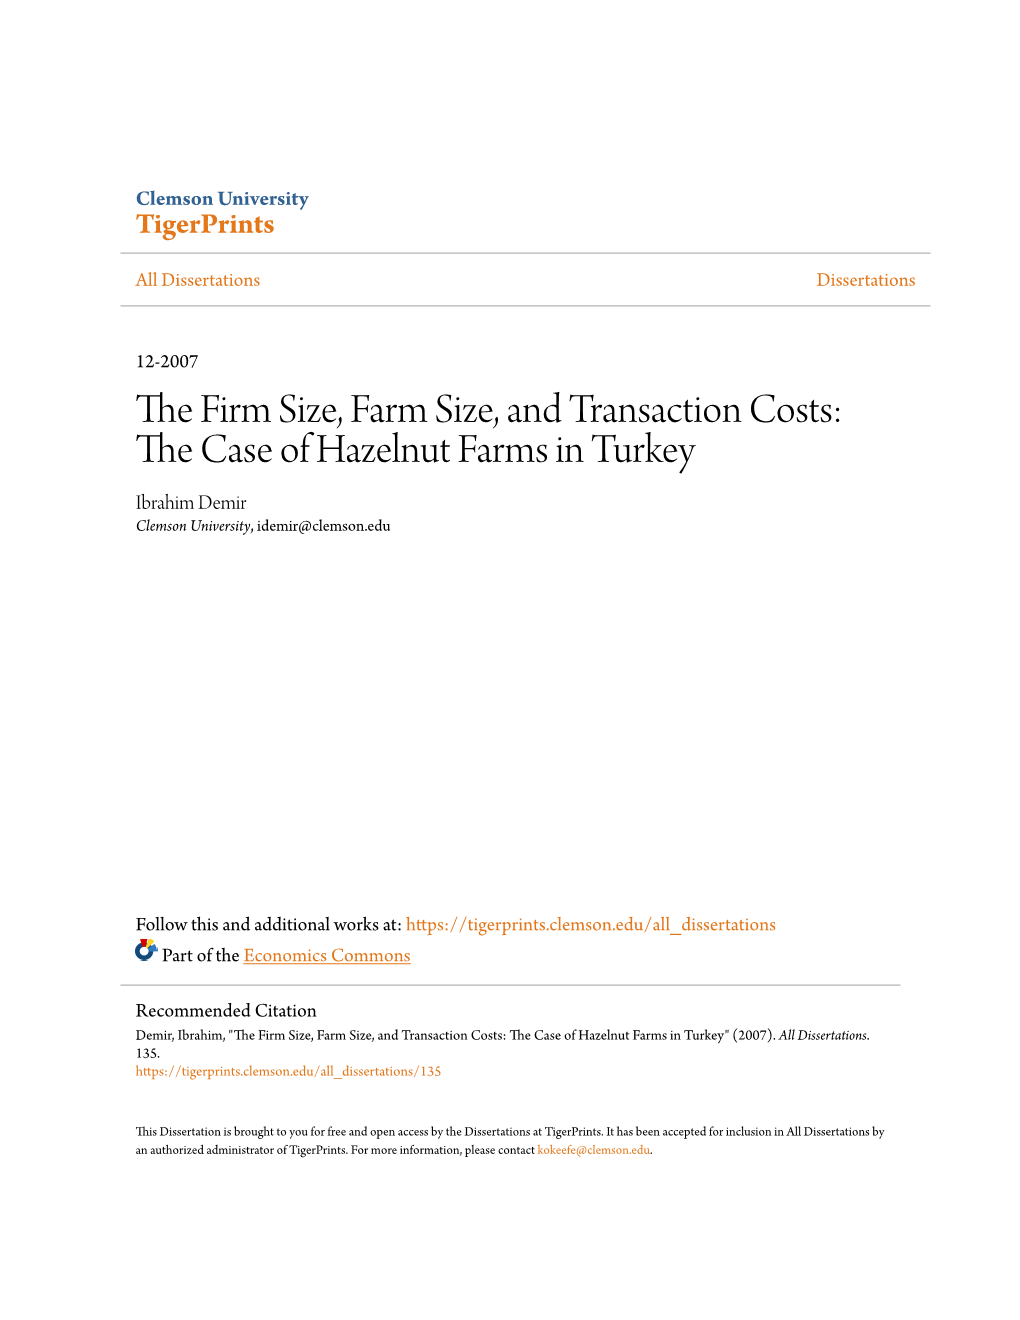 The Case of Hazelnut Farms in Turkey